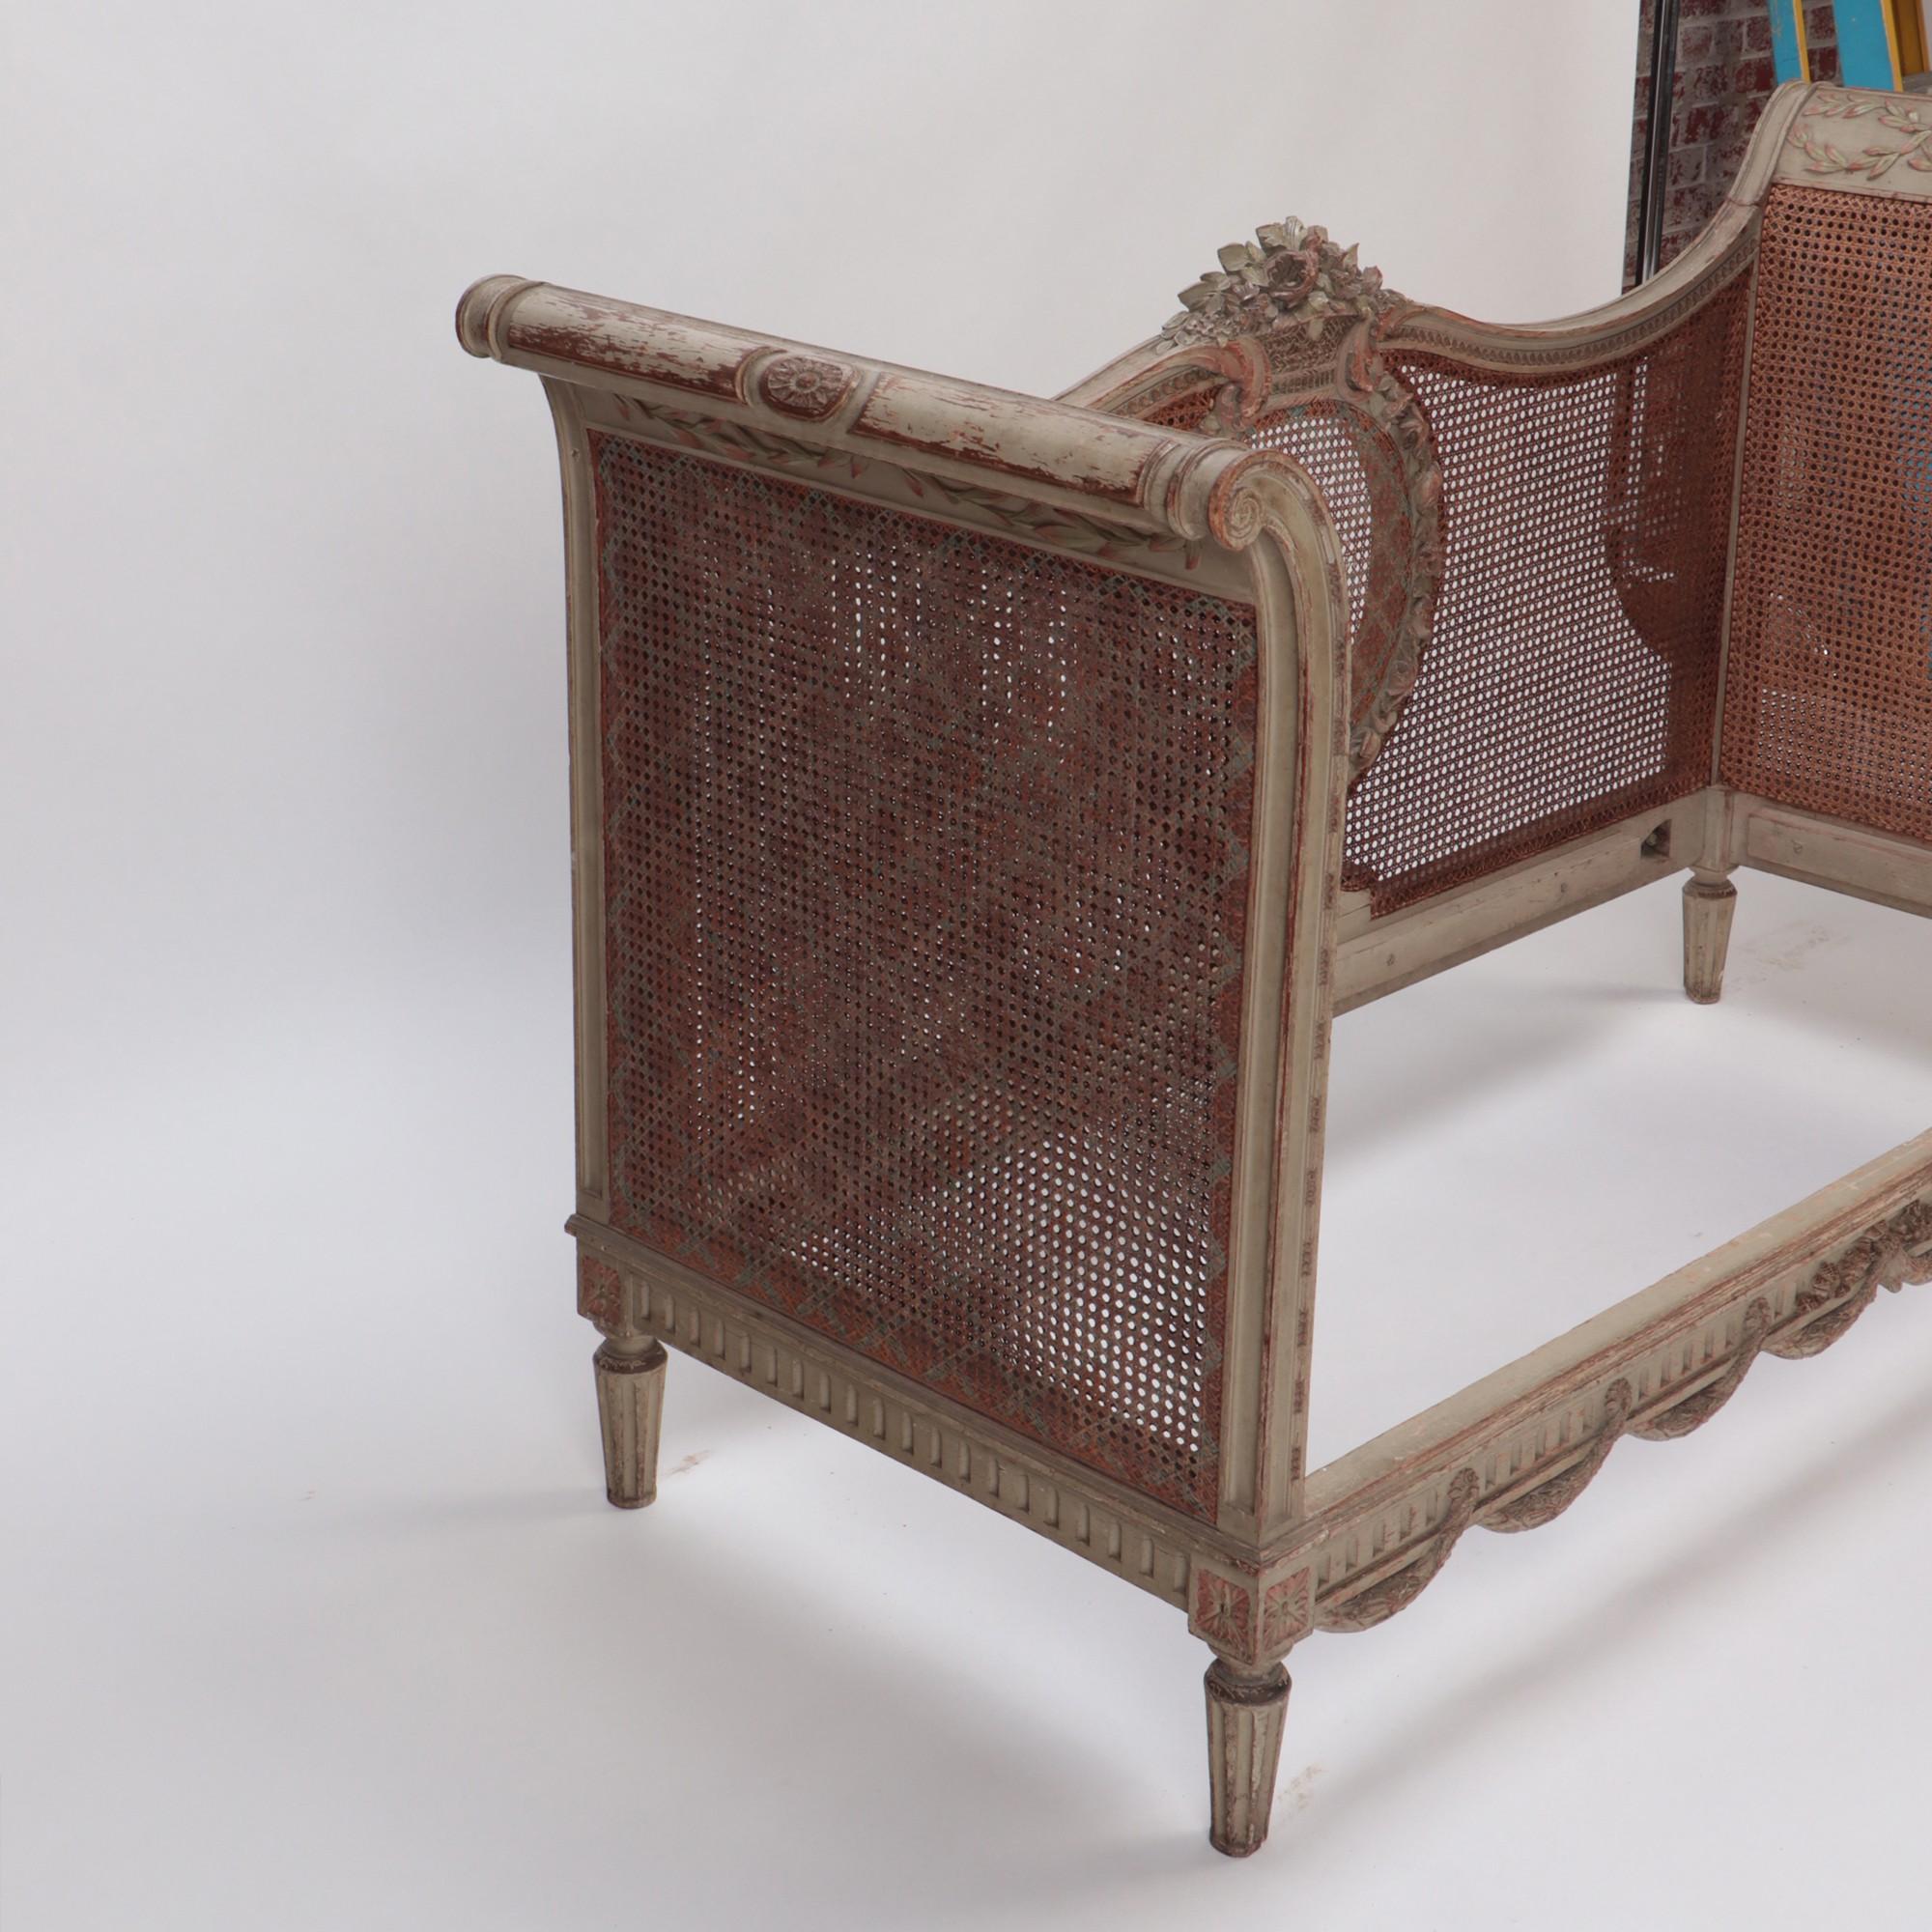 Ein französisches Directoire-Bett/Sofa aus bemaltem Schilfrohr aus dem späten 19. Jahrhundert. C 1880. Sehr dekoratives Stück mit originaler Patina.